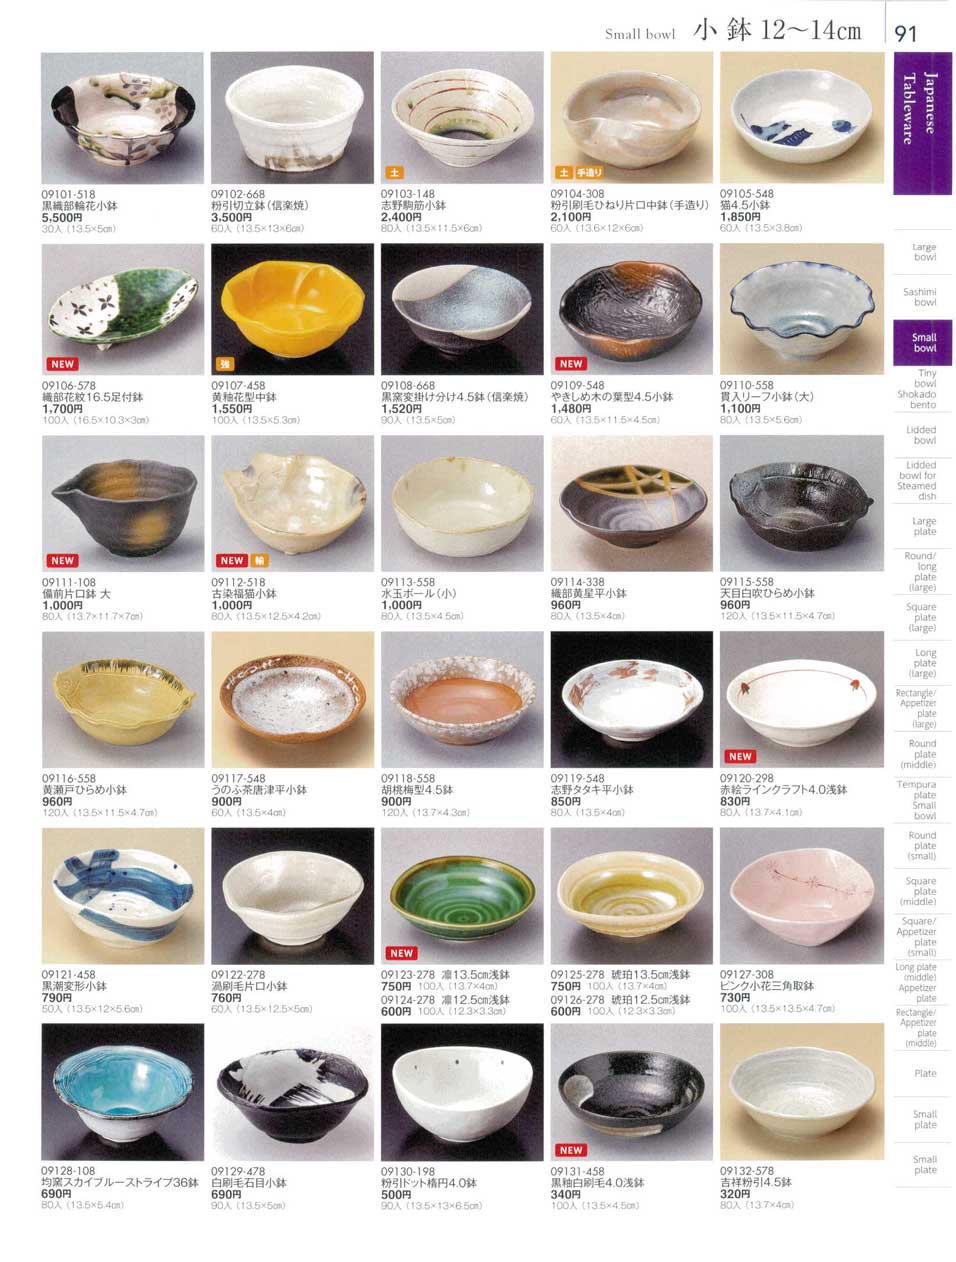 食器 小鉢１２から１４ｃｍSmall bowl 陶雅１８－91ページ